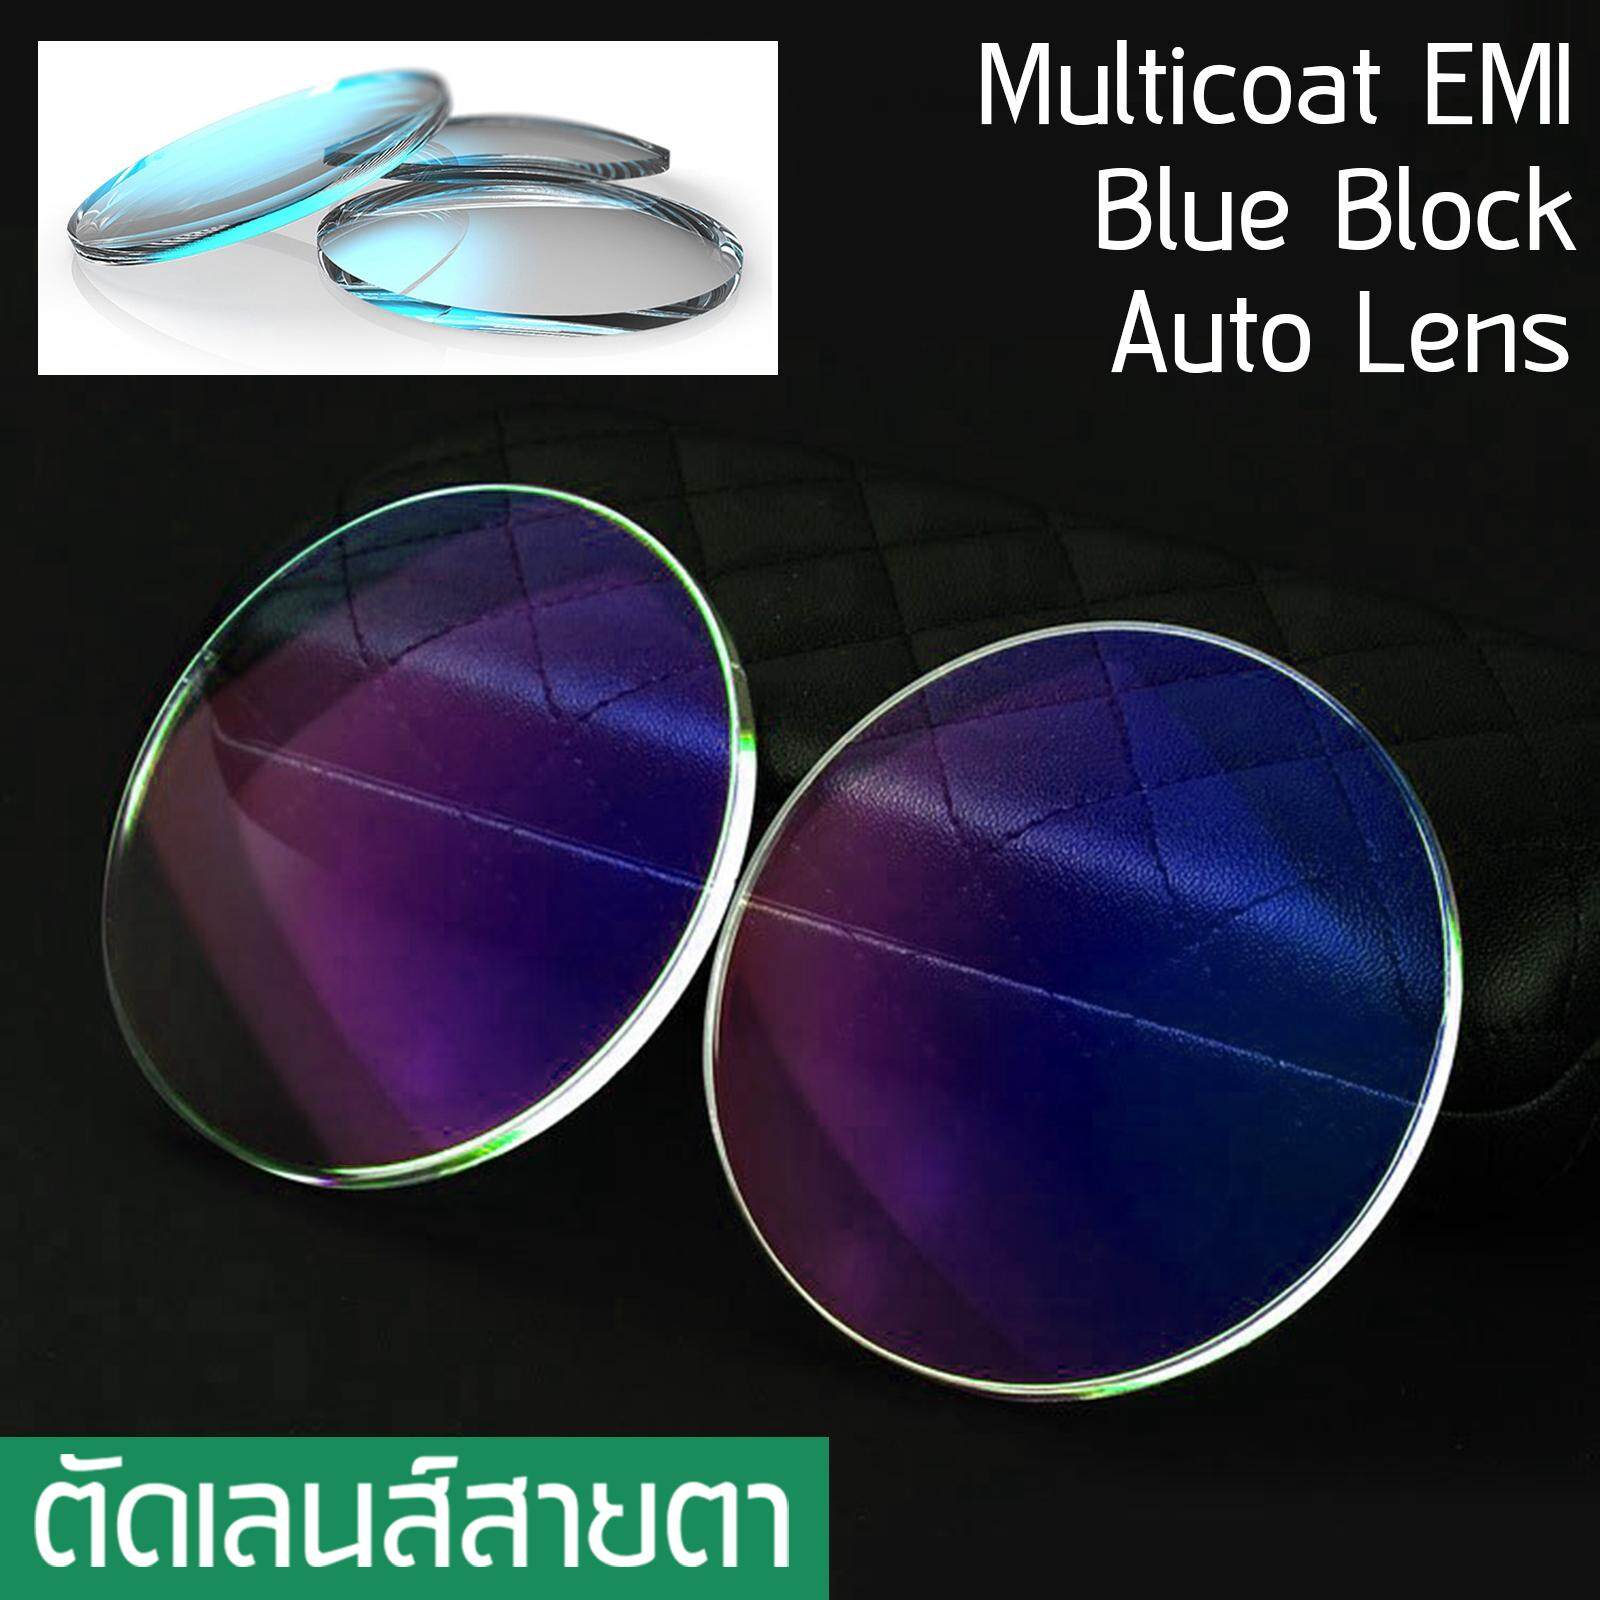 Lens เลนส์ รับตัดเลนส์แว่นตา ทุกชนิด เลนส์กรองแสง Blue light บลูไลท์ / เลนส์ปรับแสง Auto เปลี่ยนสี / เลนส์มัลติโค๊ต Multicoat / Computer กรองแสงคอม มือถือ ป้องกันแสงสีฟ้า / UV 400 สำหรับตัดไส่แว่นตา สายตาสั้น สายตายาว สายตาเอียง ราคาเลนส์ไม่รวมกรอบแว่นตา